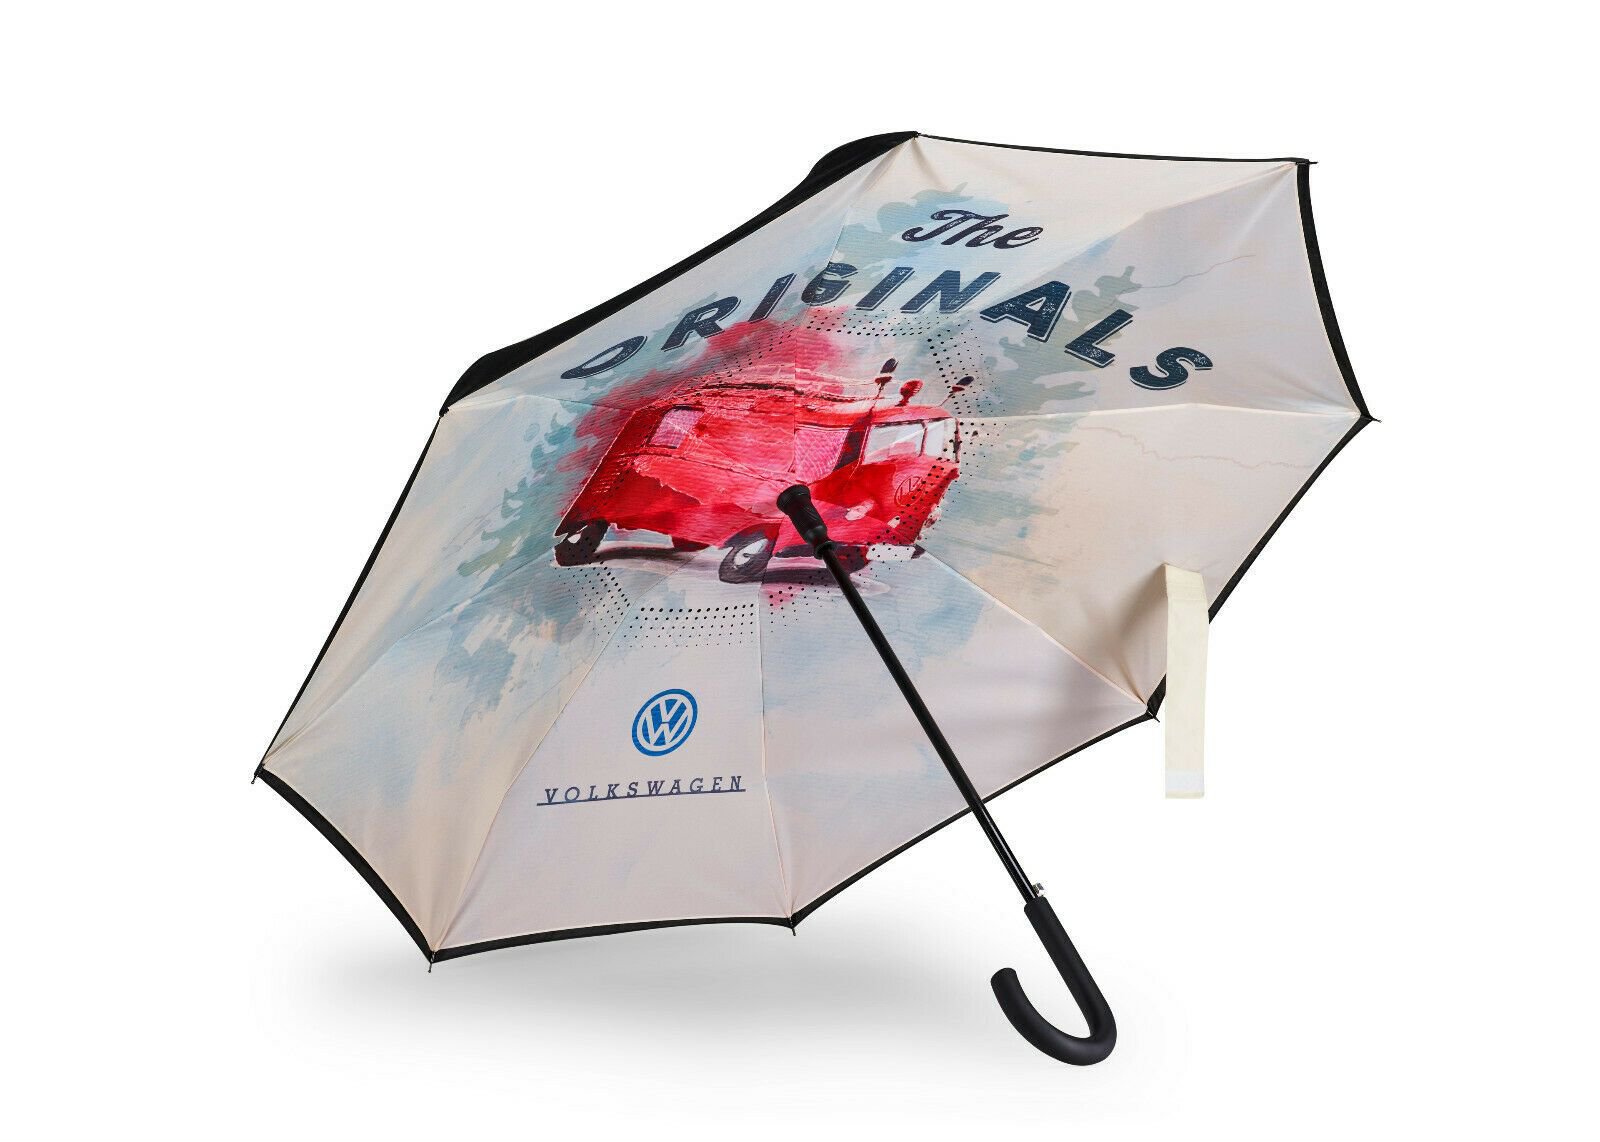 Volkswagen Regenschirm T1 Motivdruck "The Originals"